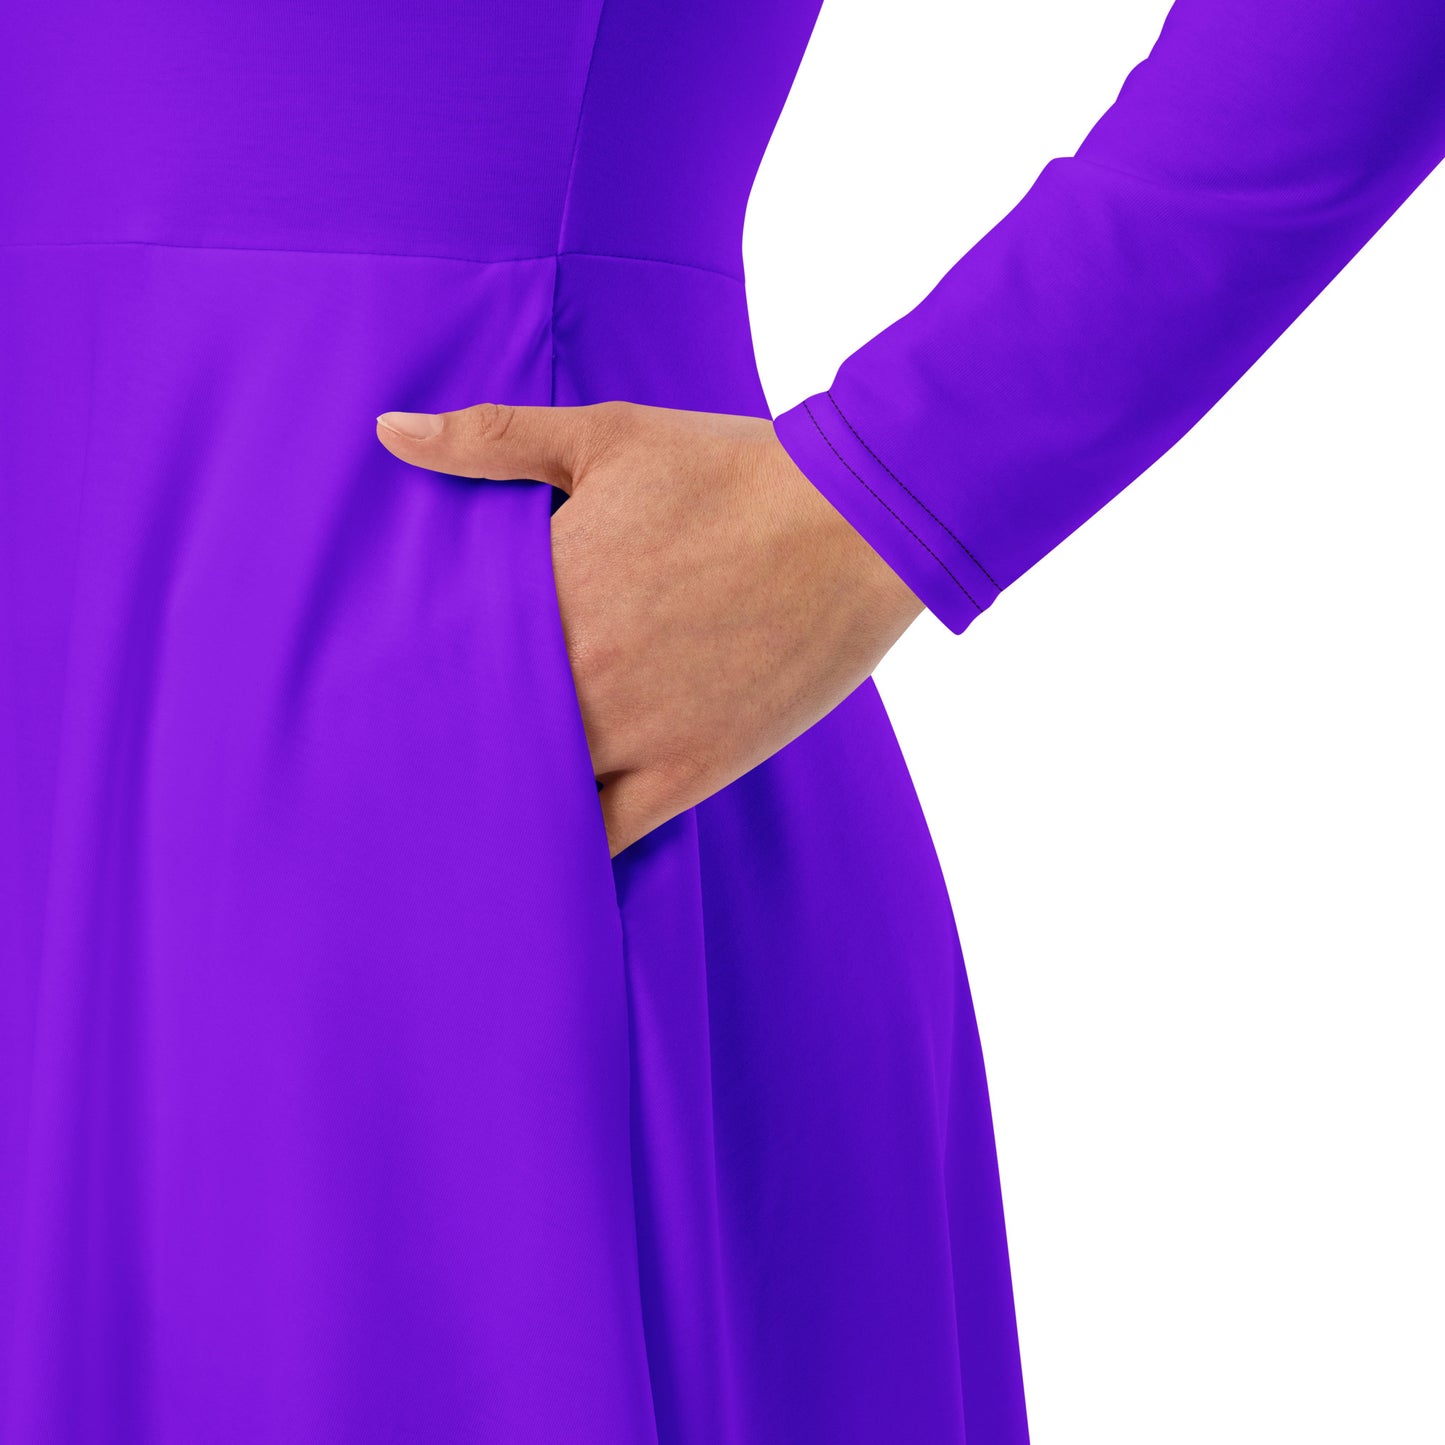 "Purple" Long Sleeve Midi Dress